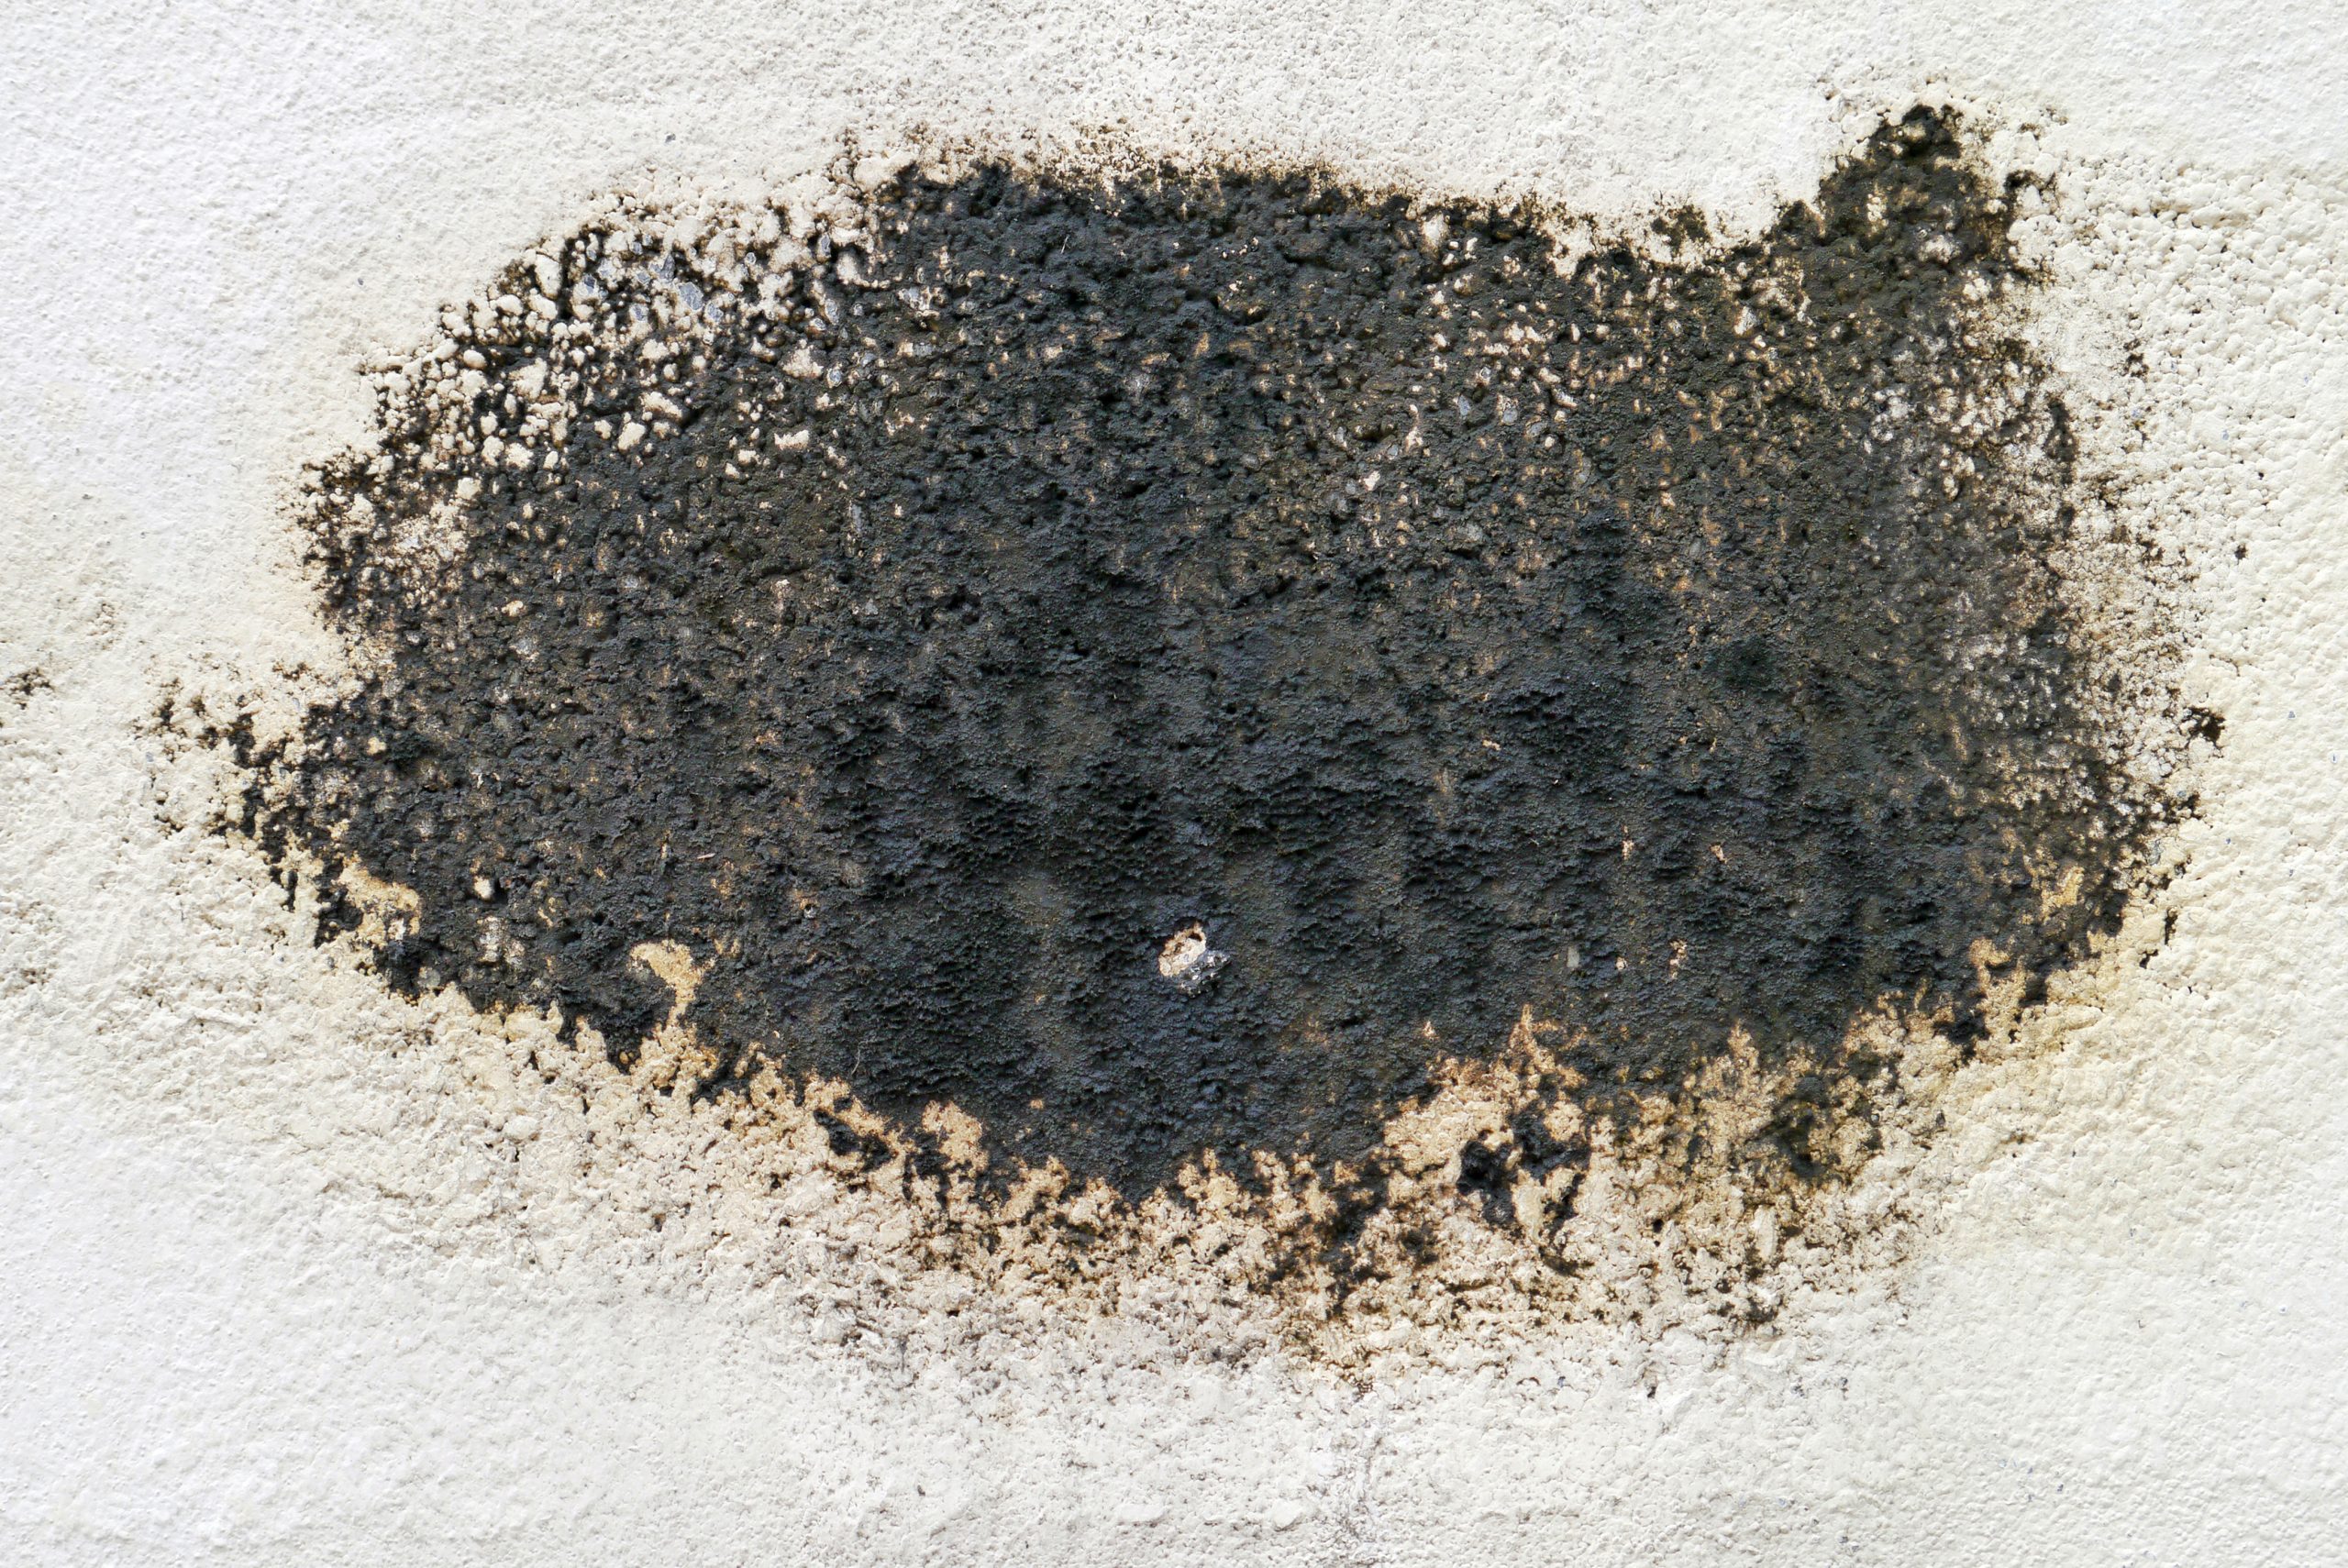 moisissure noire sur un mur extérieur